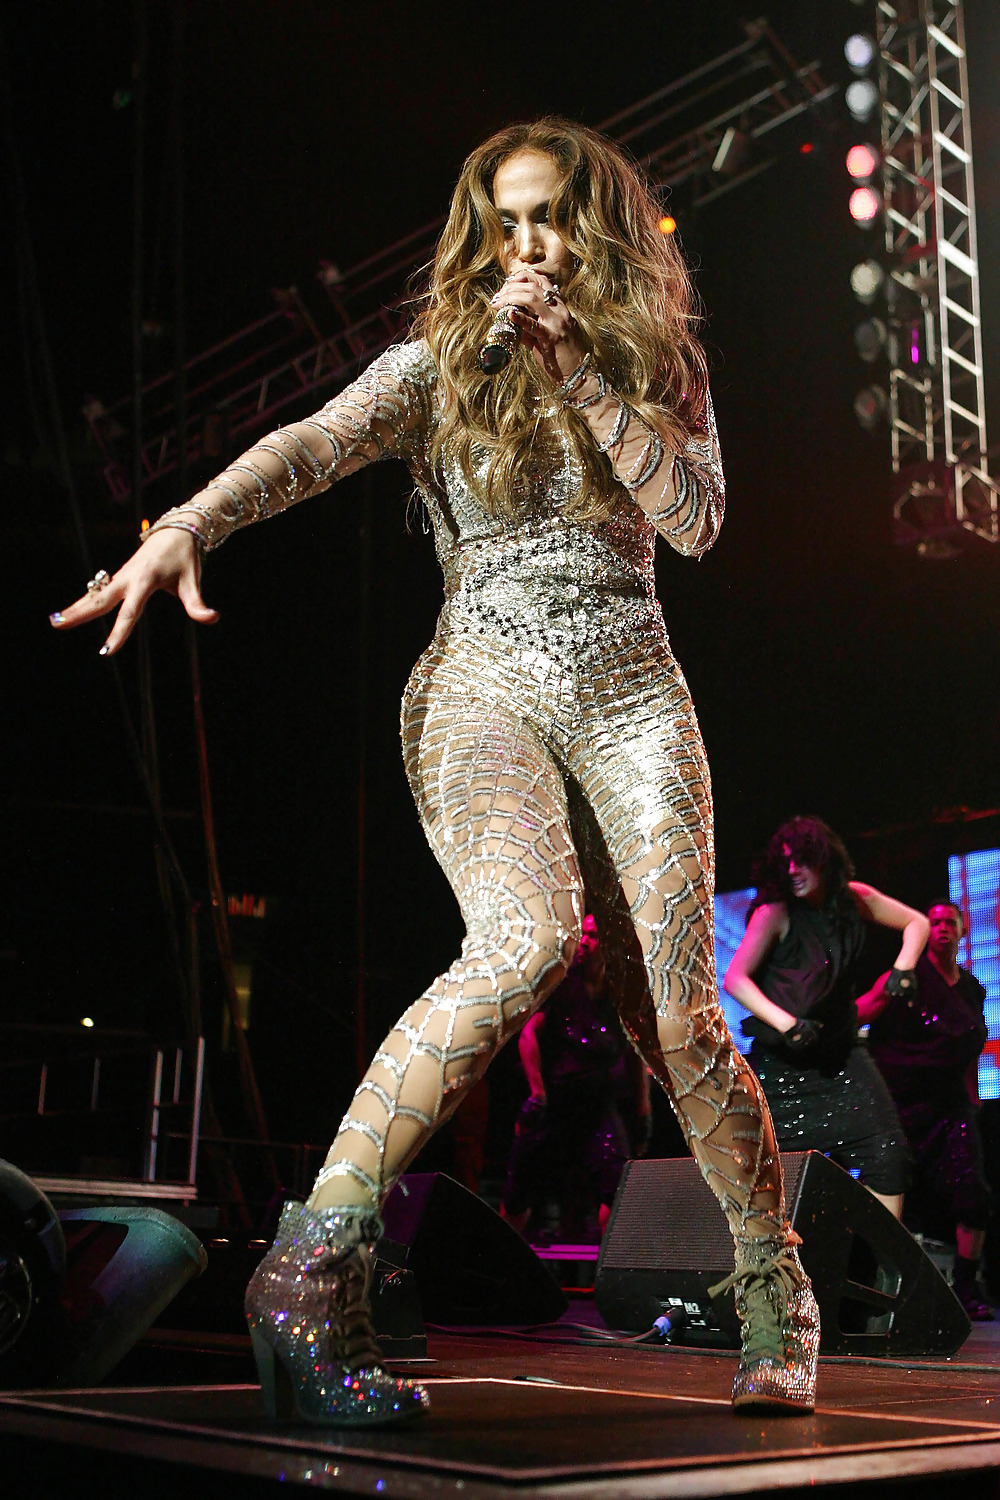 Jennifer Lopez Kiis Fms 2011 Wango Tango-Konzert #3903040